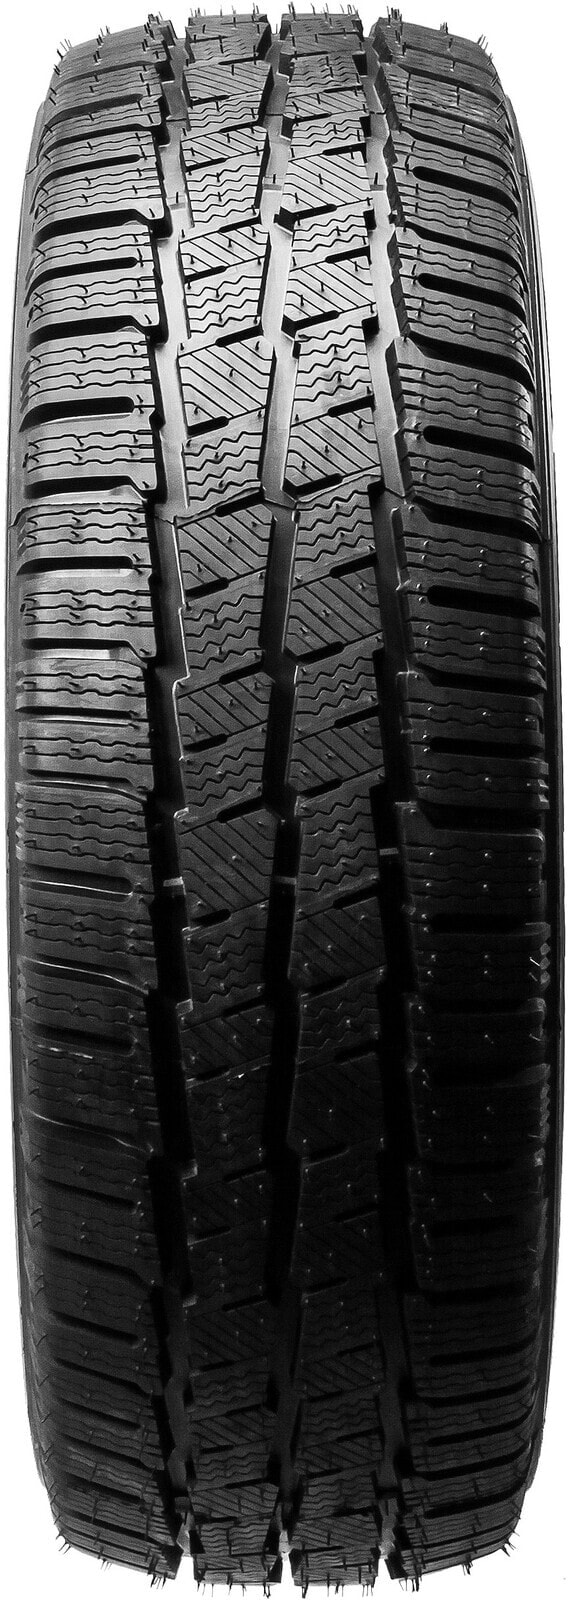 Шины для легких грузовых автомобилей зимние Michelin Agilis Alpin 3PMSF M+S 215/60 R17 104/102H